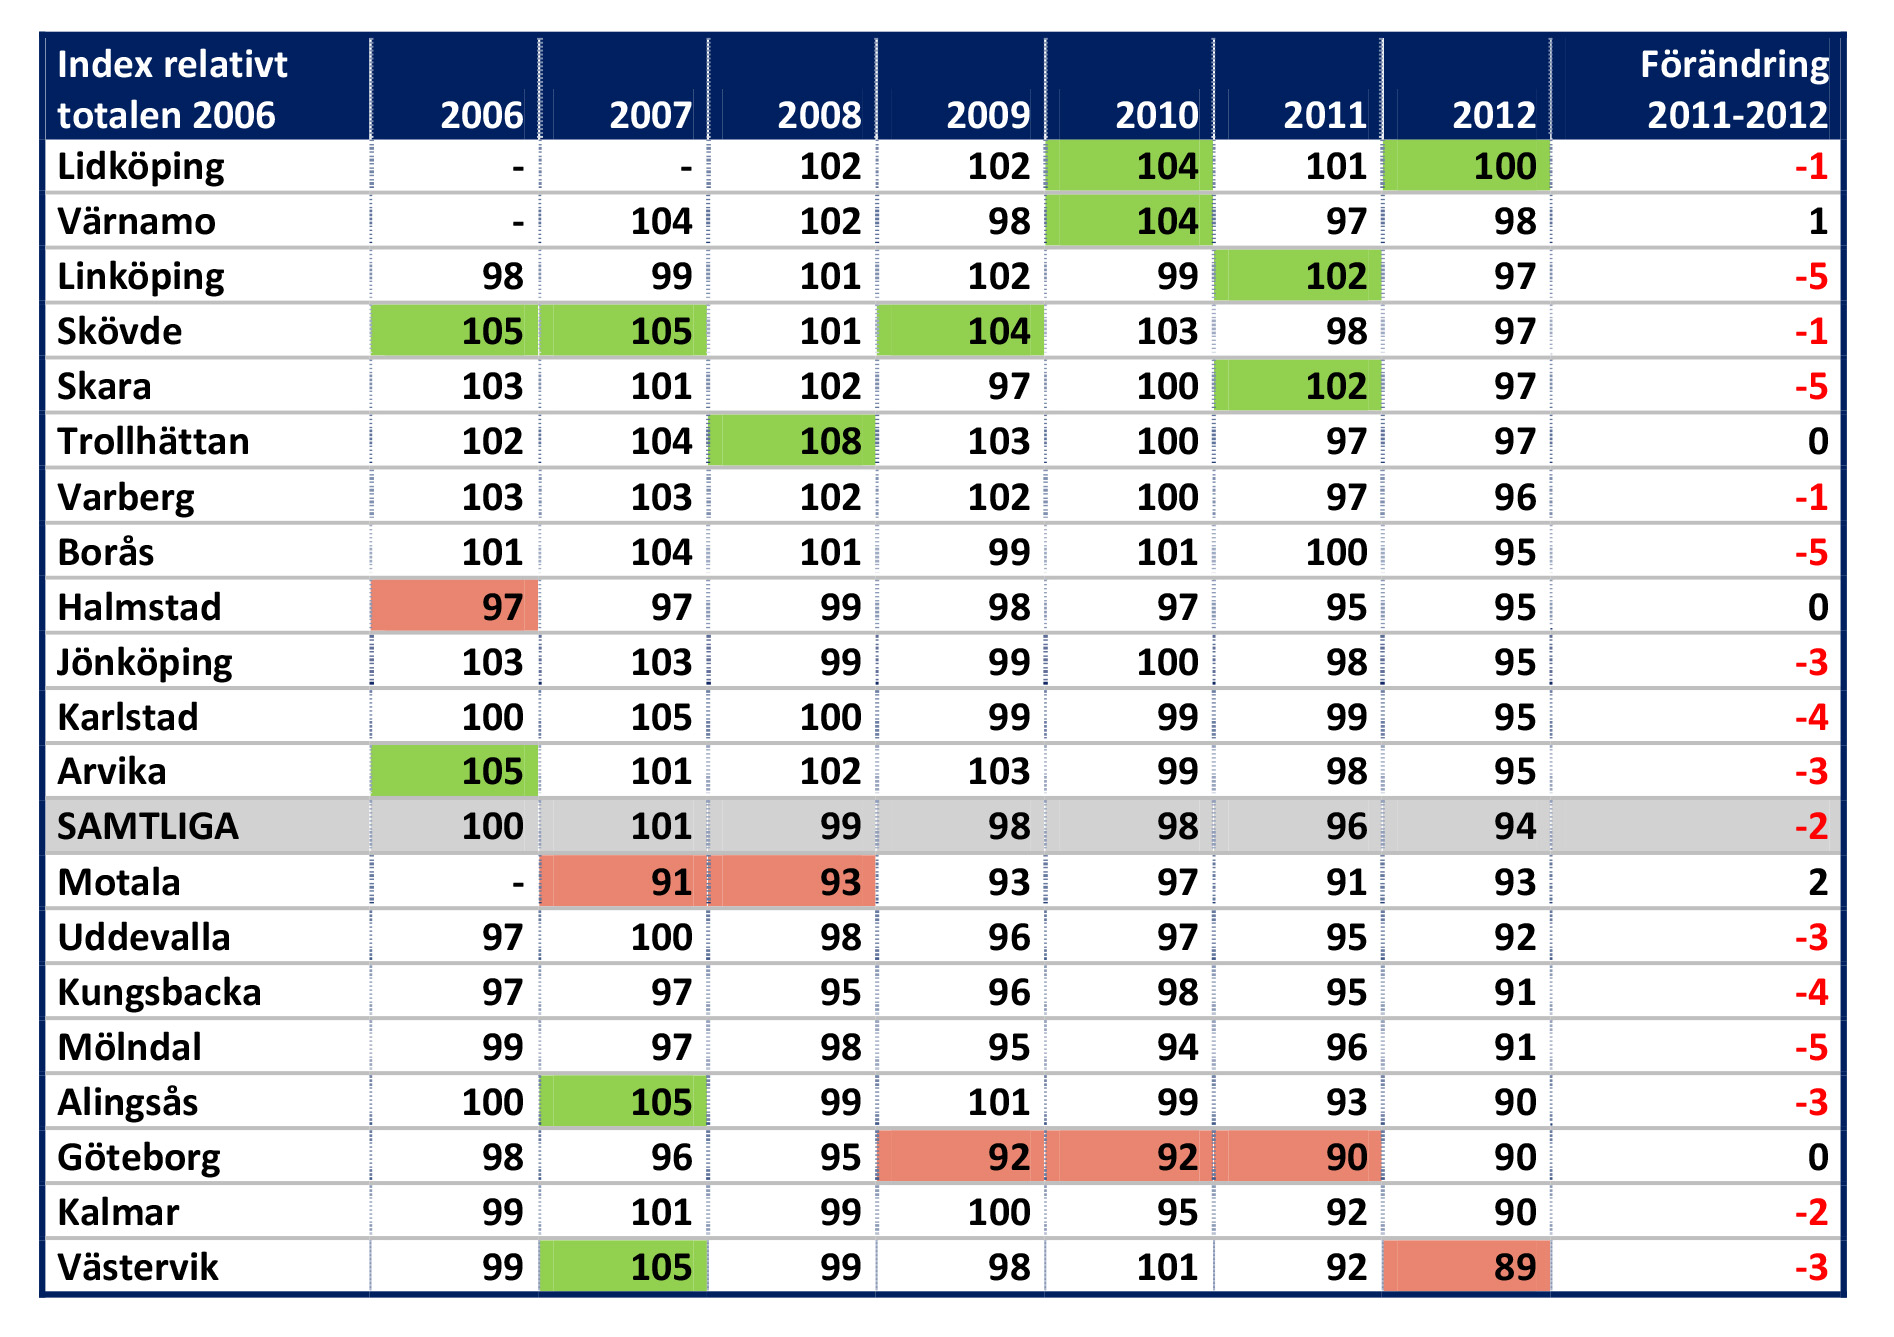 FASTIGHETSFÖRETAGARINDEX 2006-2012 Kommentar: Kommentar: Röda och gröna rutor markerar lägsta respektive högsta indexvärdet för respektive år.